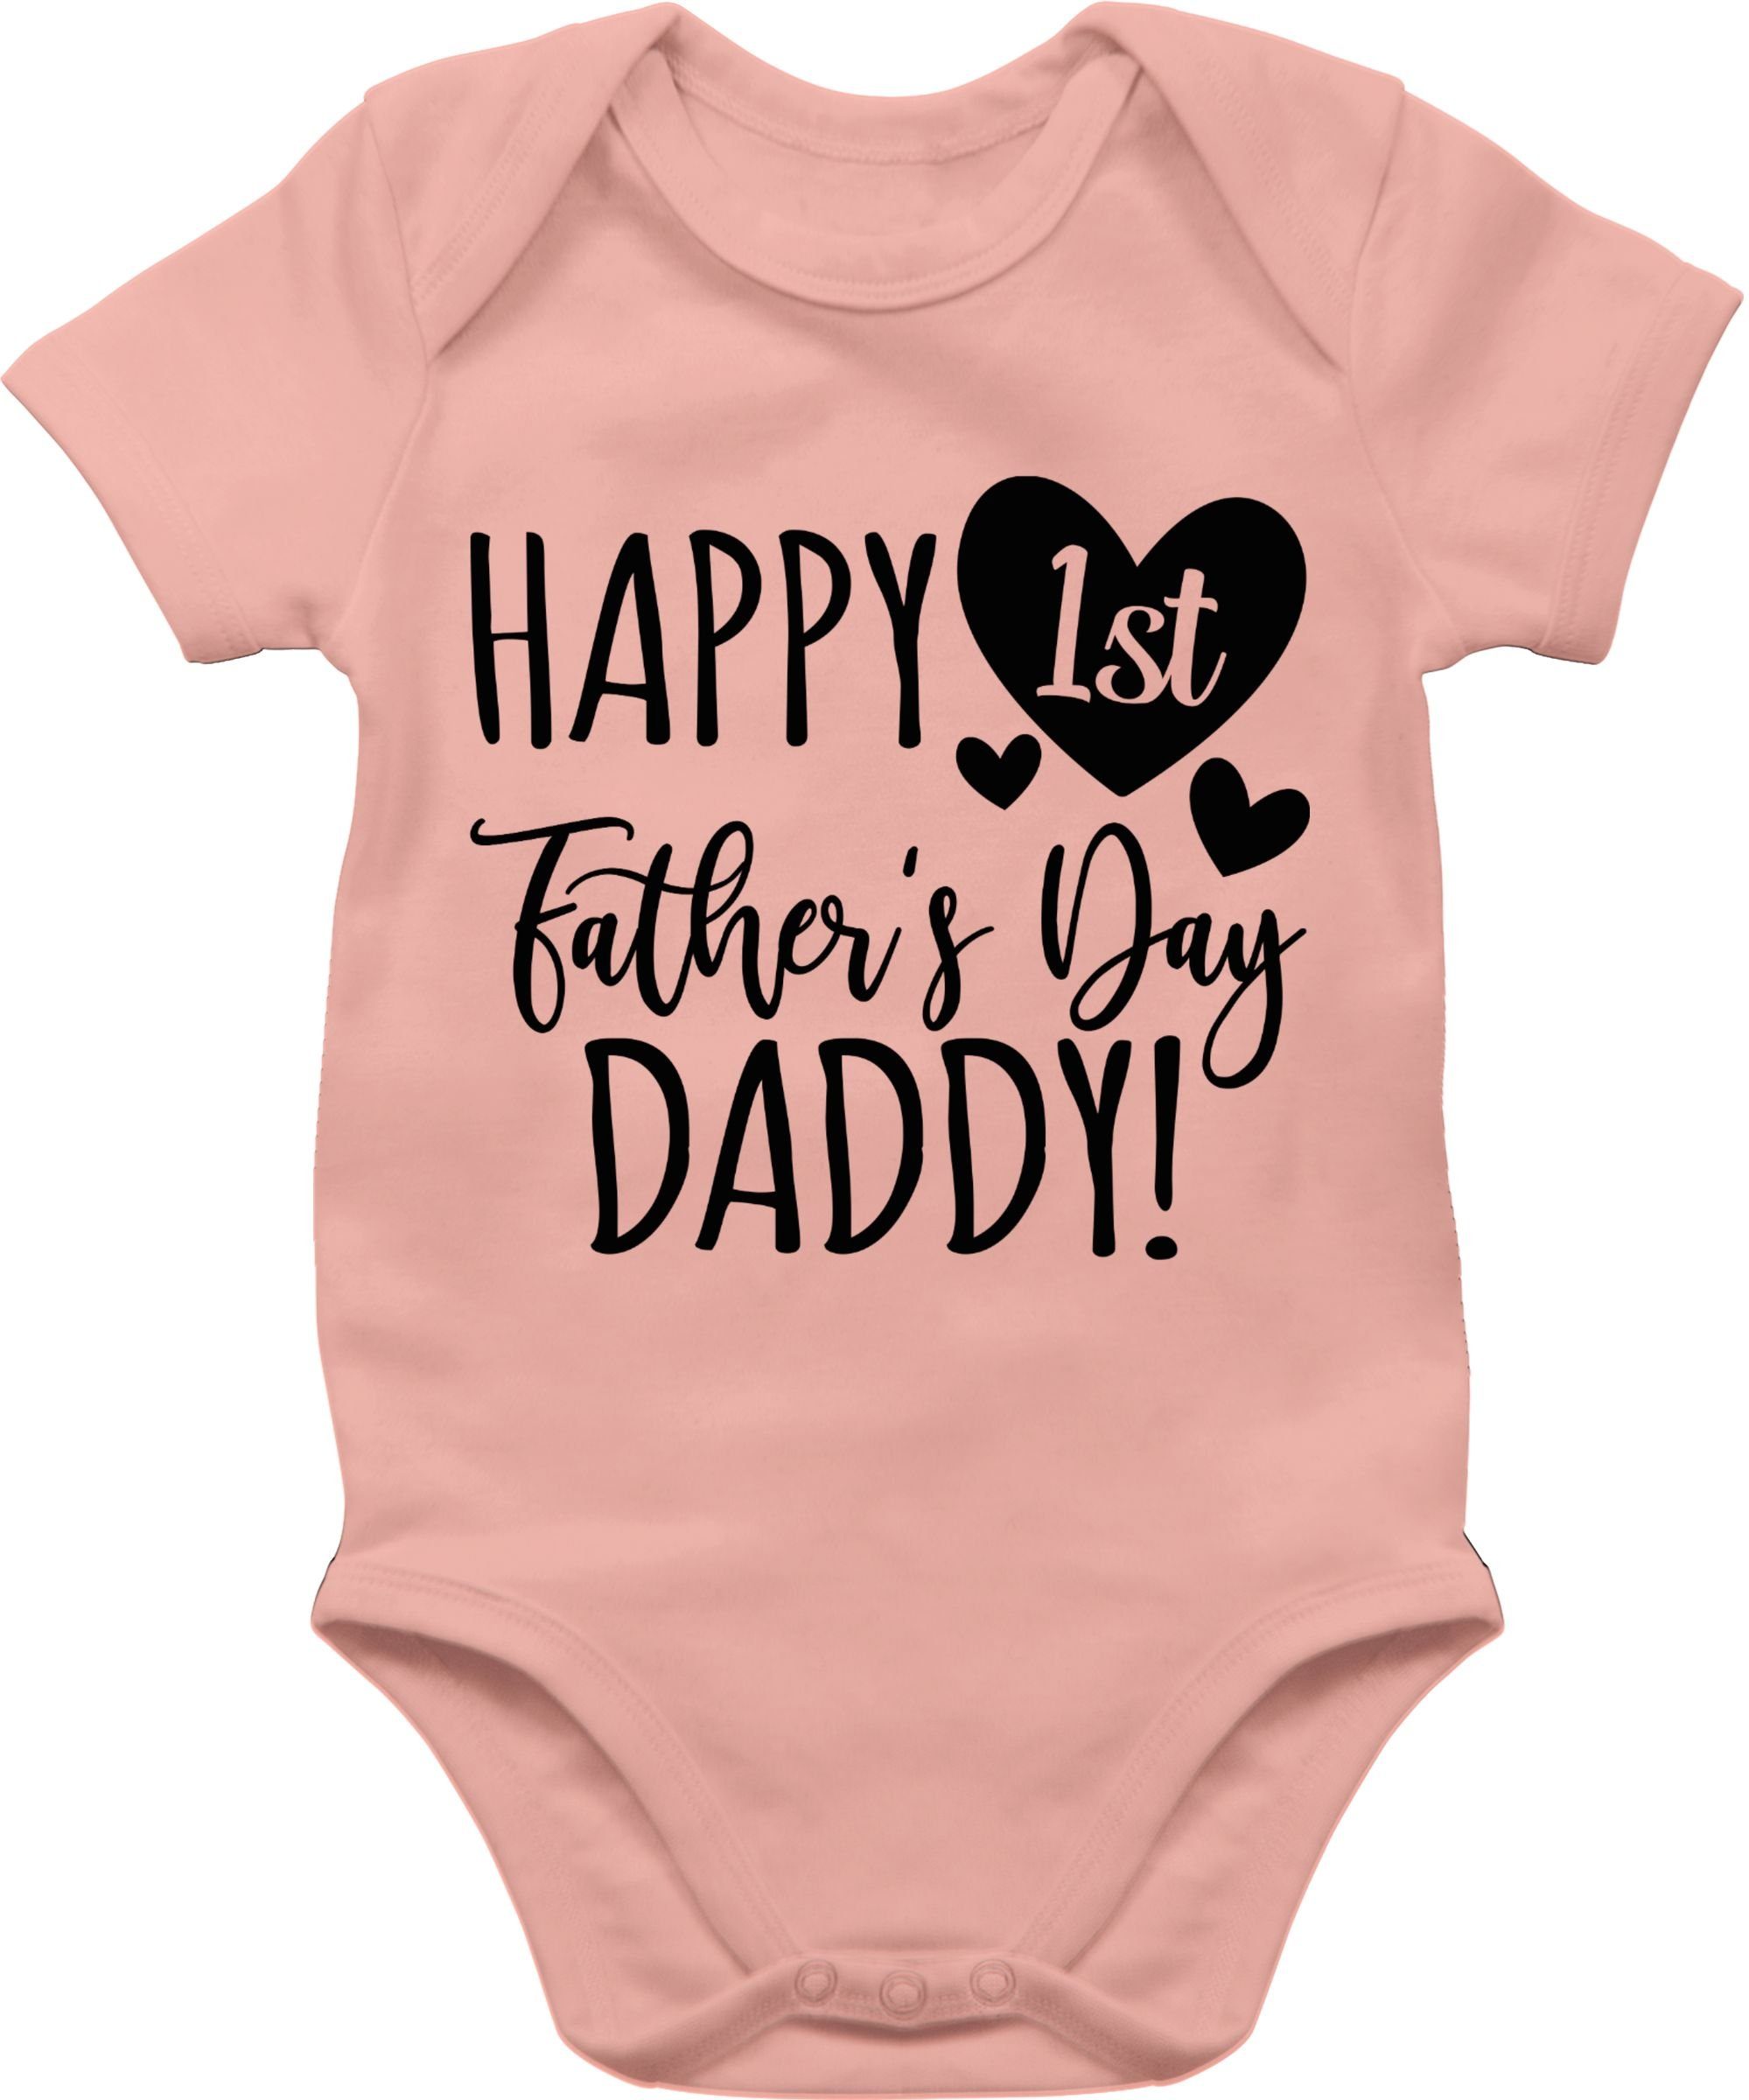 Shirtracer Shirtbody Happy 1st Father's Day Daddy! - schwarz Geschenk Vatertag Baby 1 Babyrosa